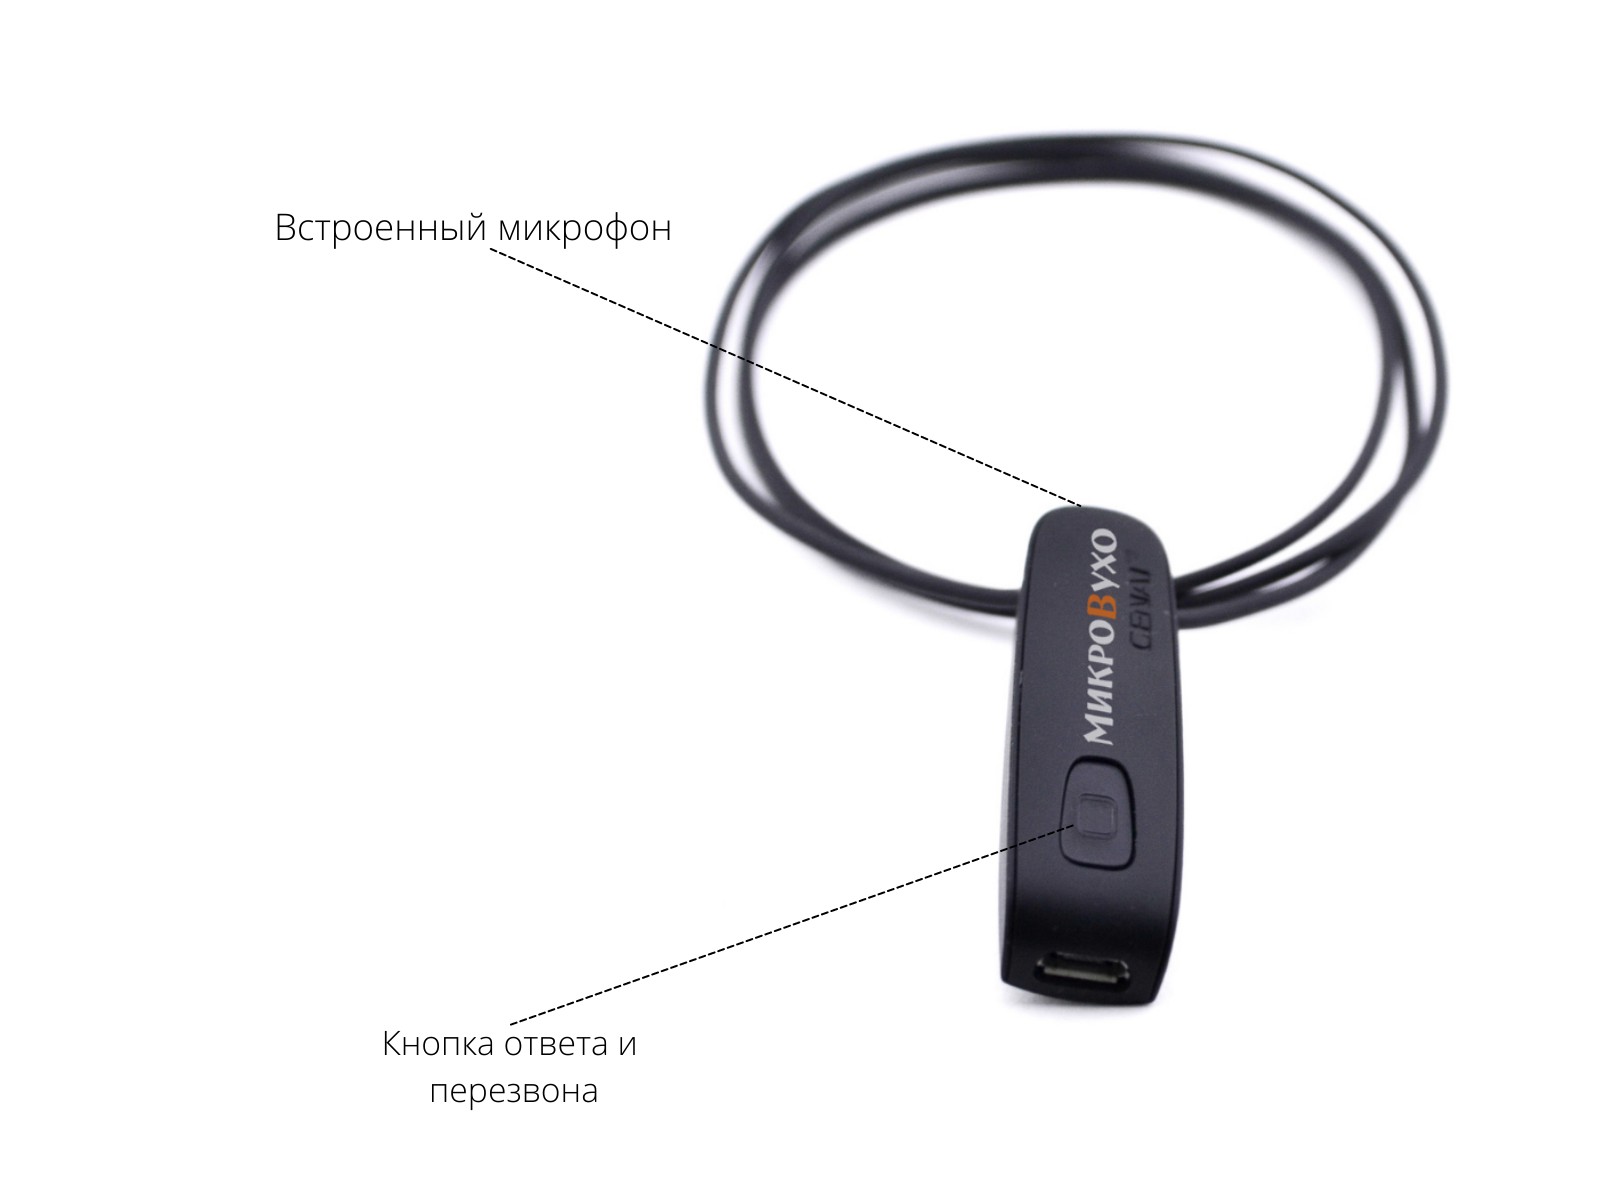 Универсальная гарнитура Bluetooth Basic с капсулой Premium и магнитами 2 мм - изображение 6